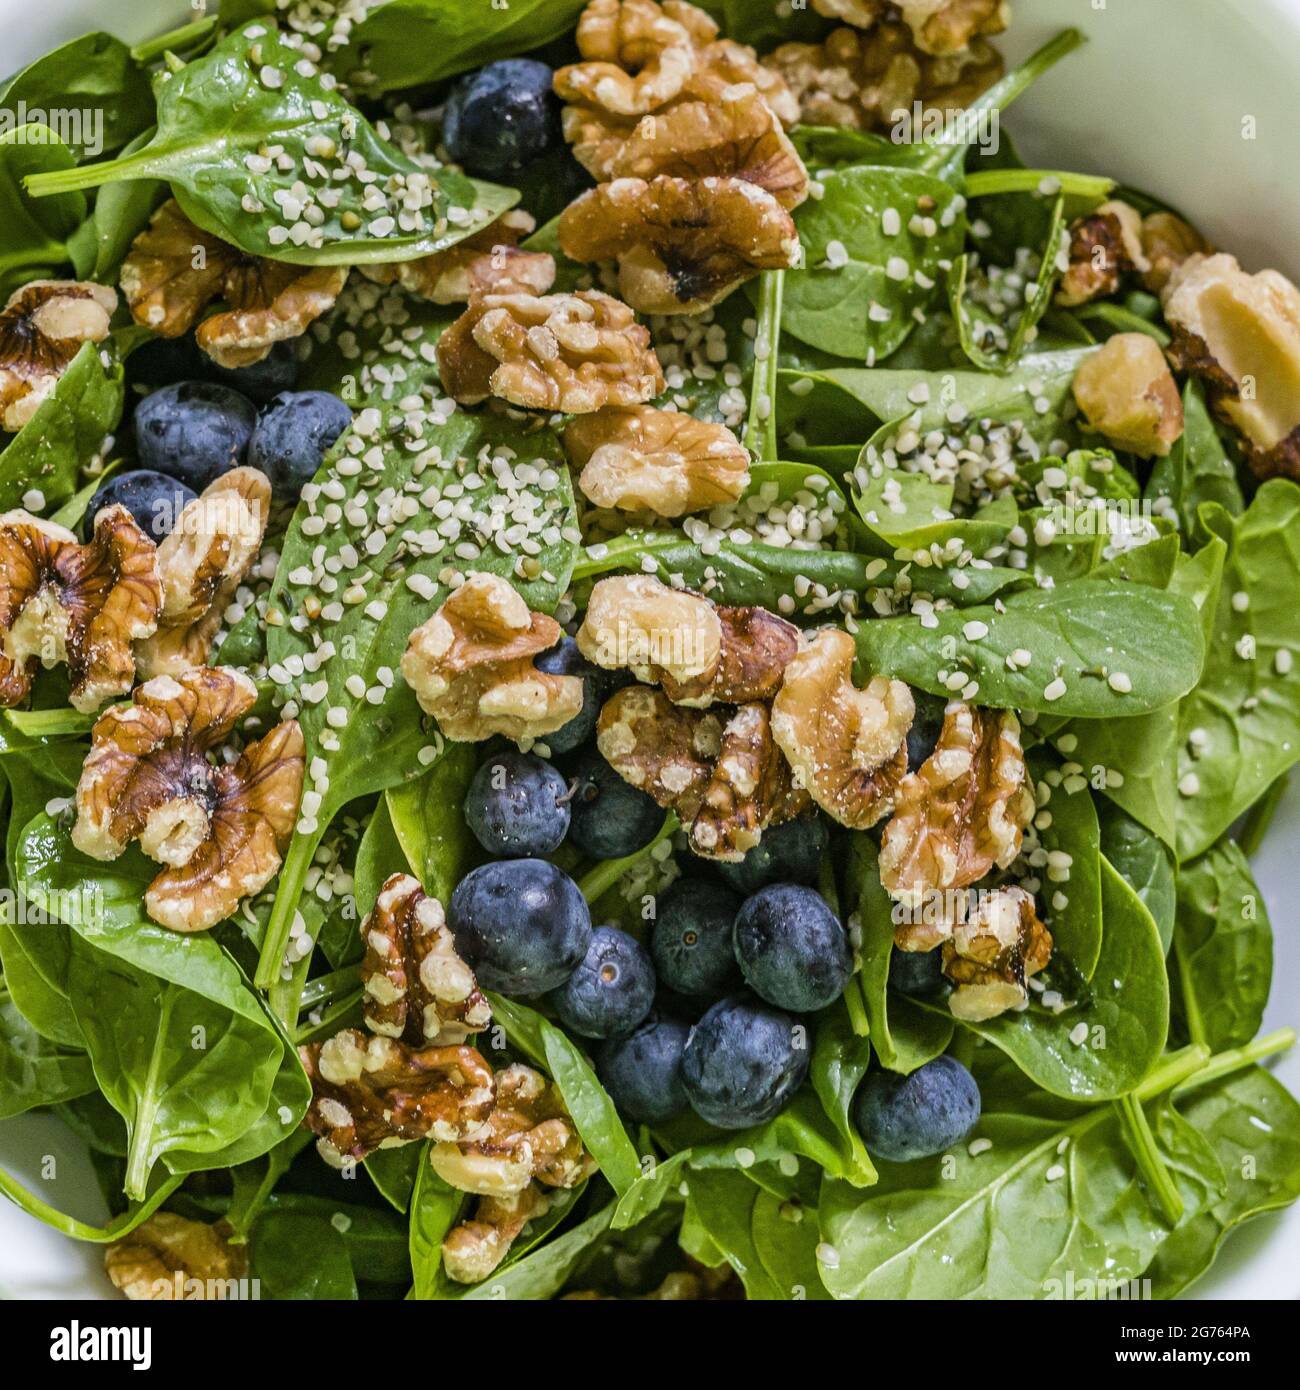 Oben frischer gesunder, feuchter grüner Spinat, Heidelbeere, Walnuss und Hanfherzen Salat in weißer Schale auf weißem Handtuch auf Holzhocker. Stockfoto